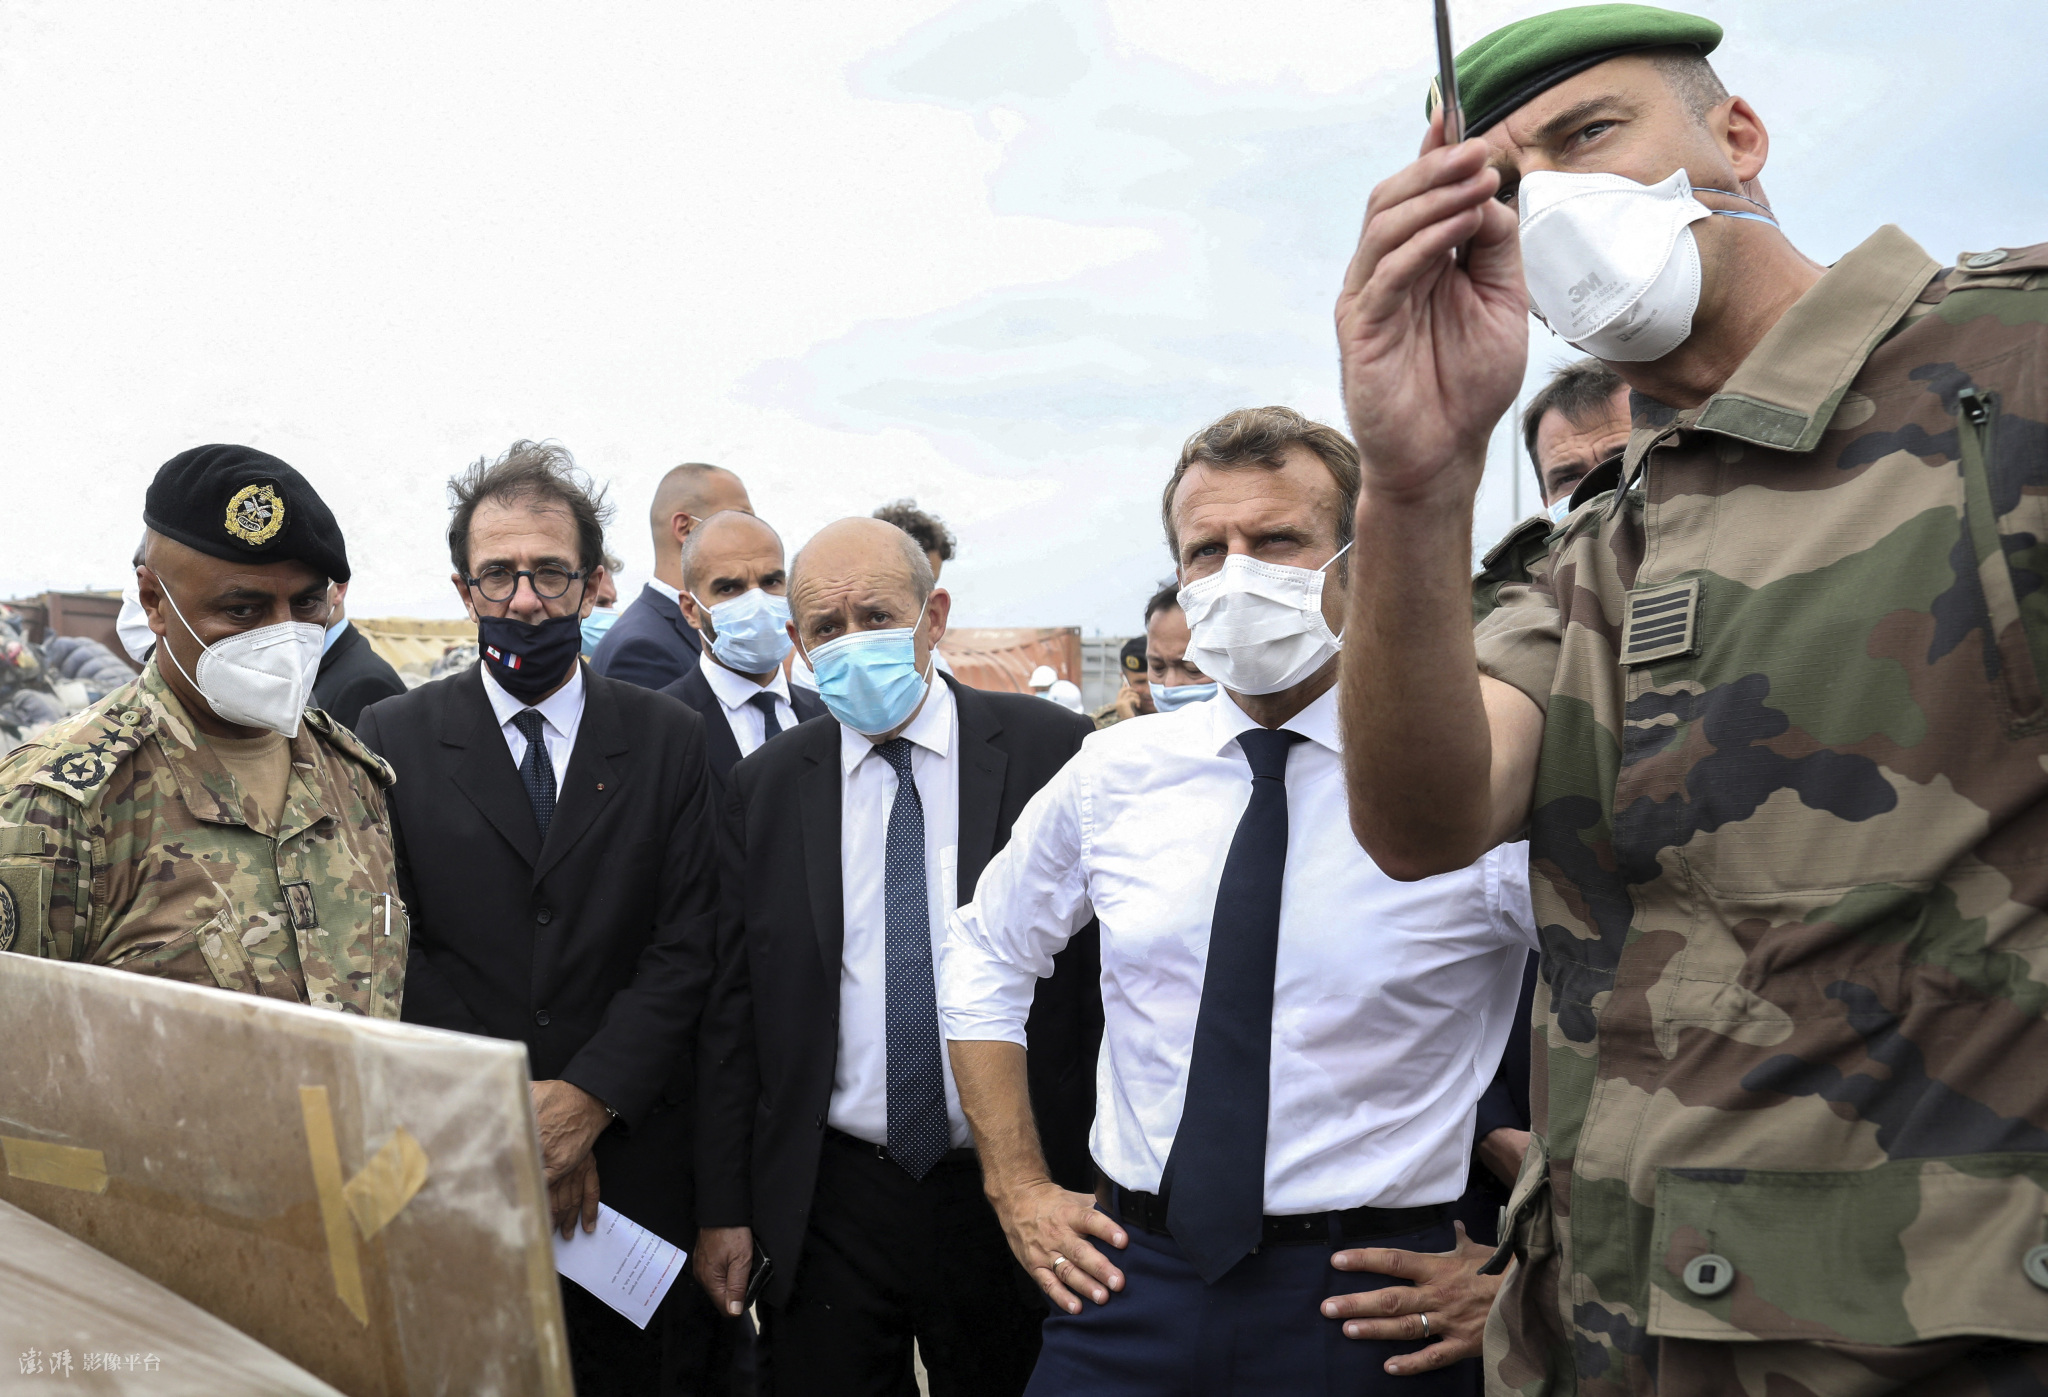 法国总统马克龙访问黎巴嫩 视察贝鲁特港口爆炸区